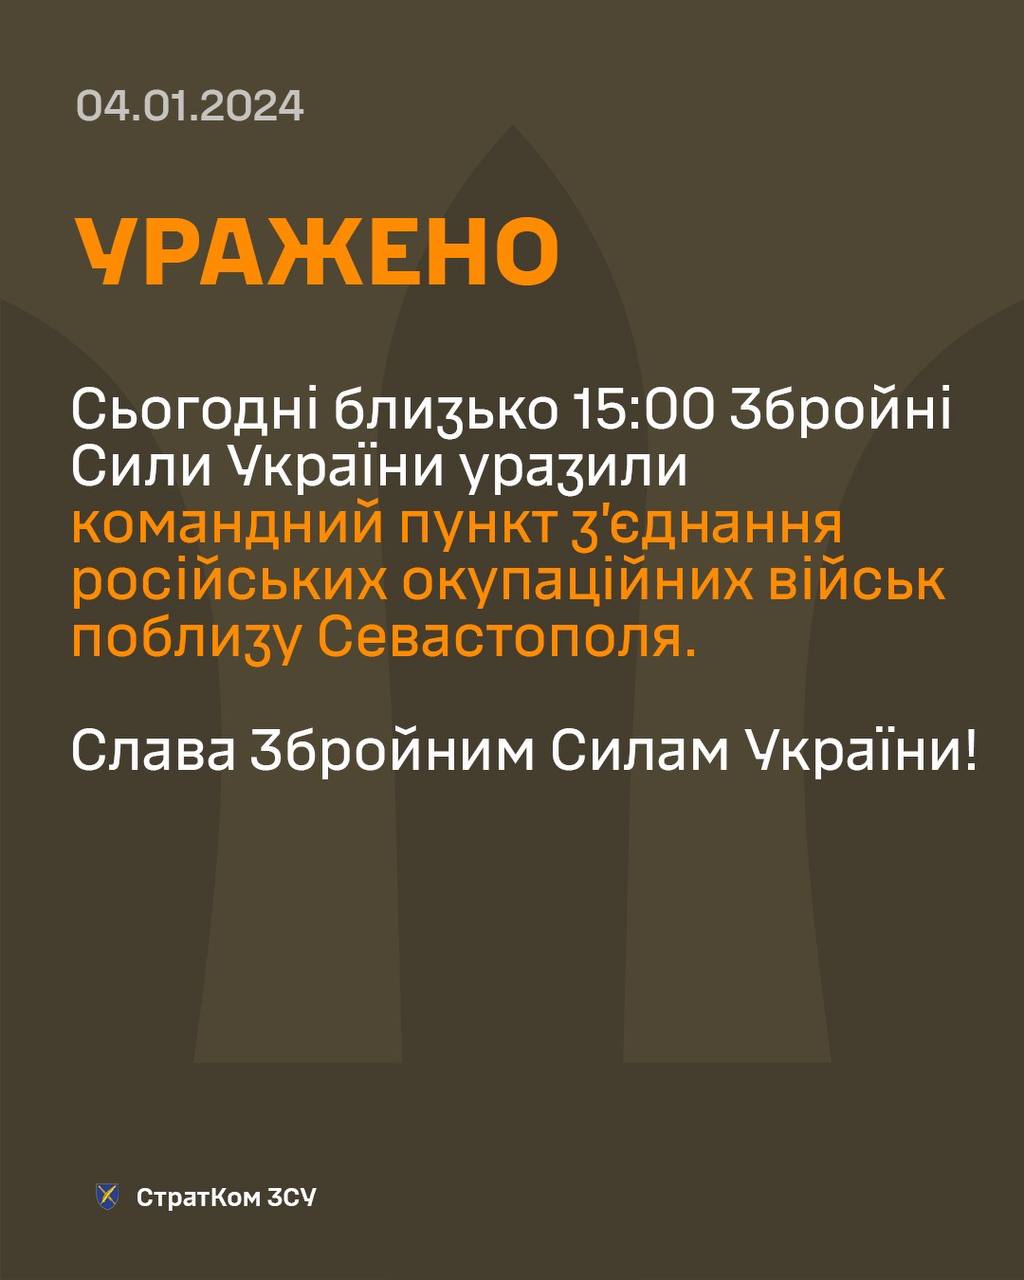 "Привет оккупантам в Крыму!" - ВСУ передали "пламенный" привет армии Путина